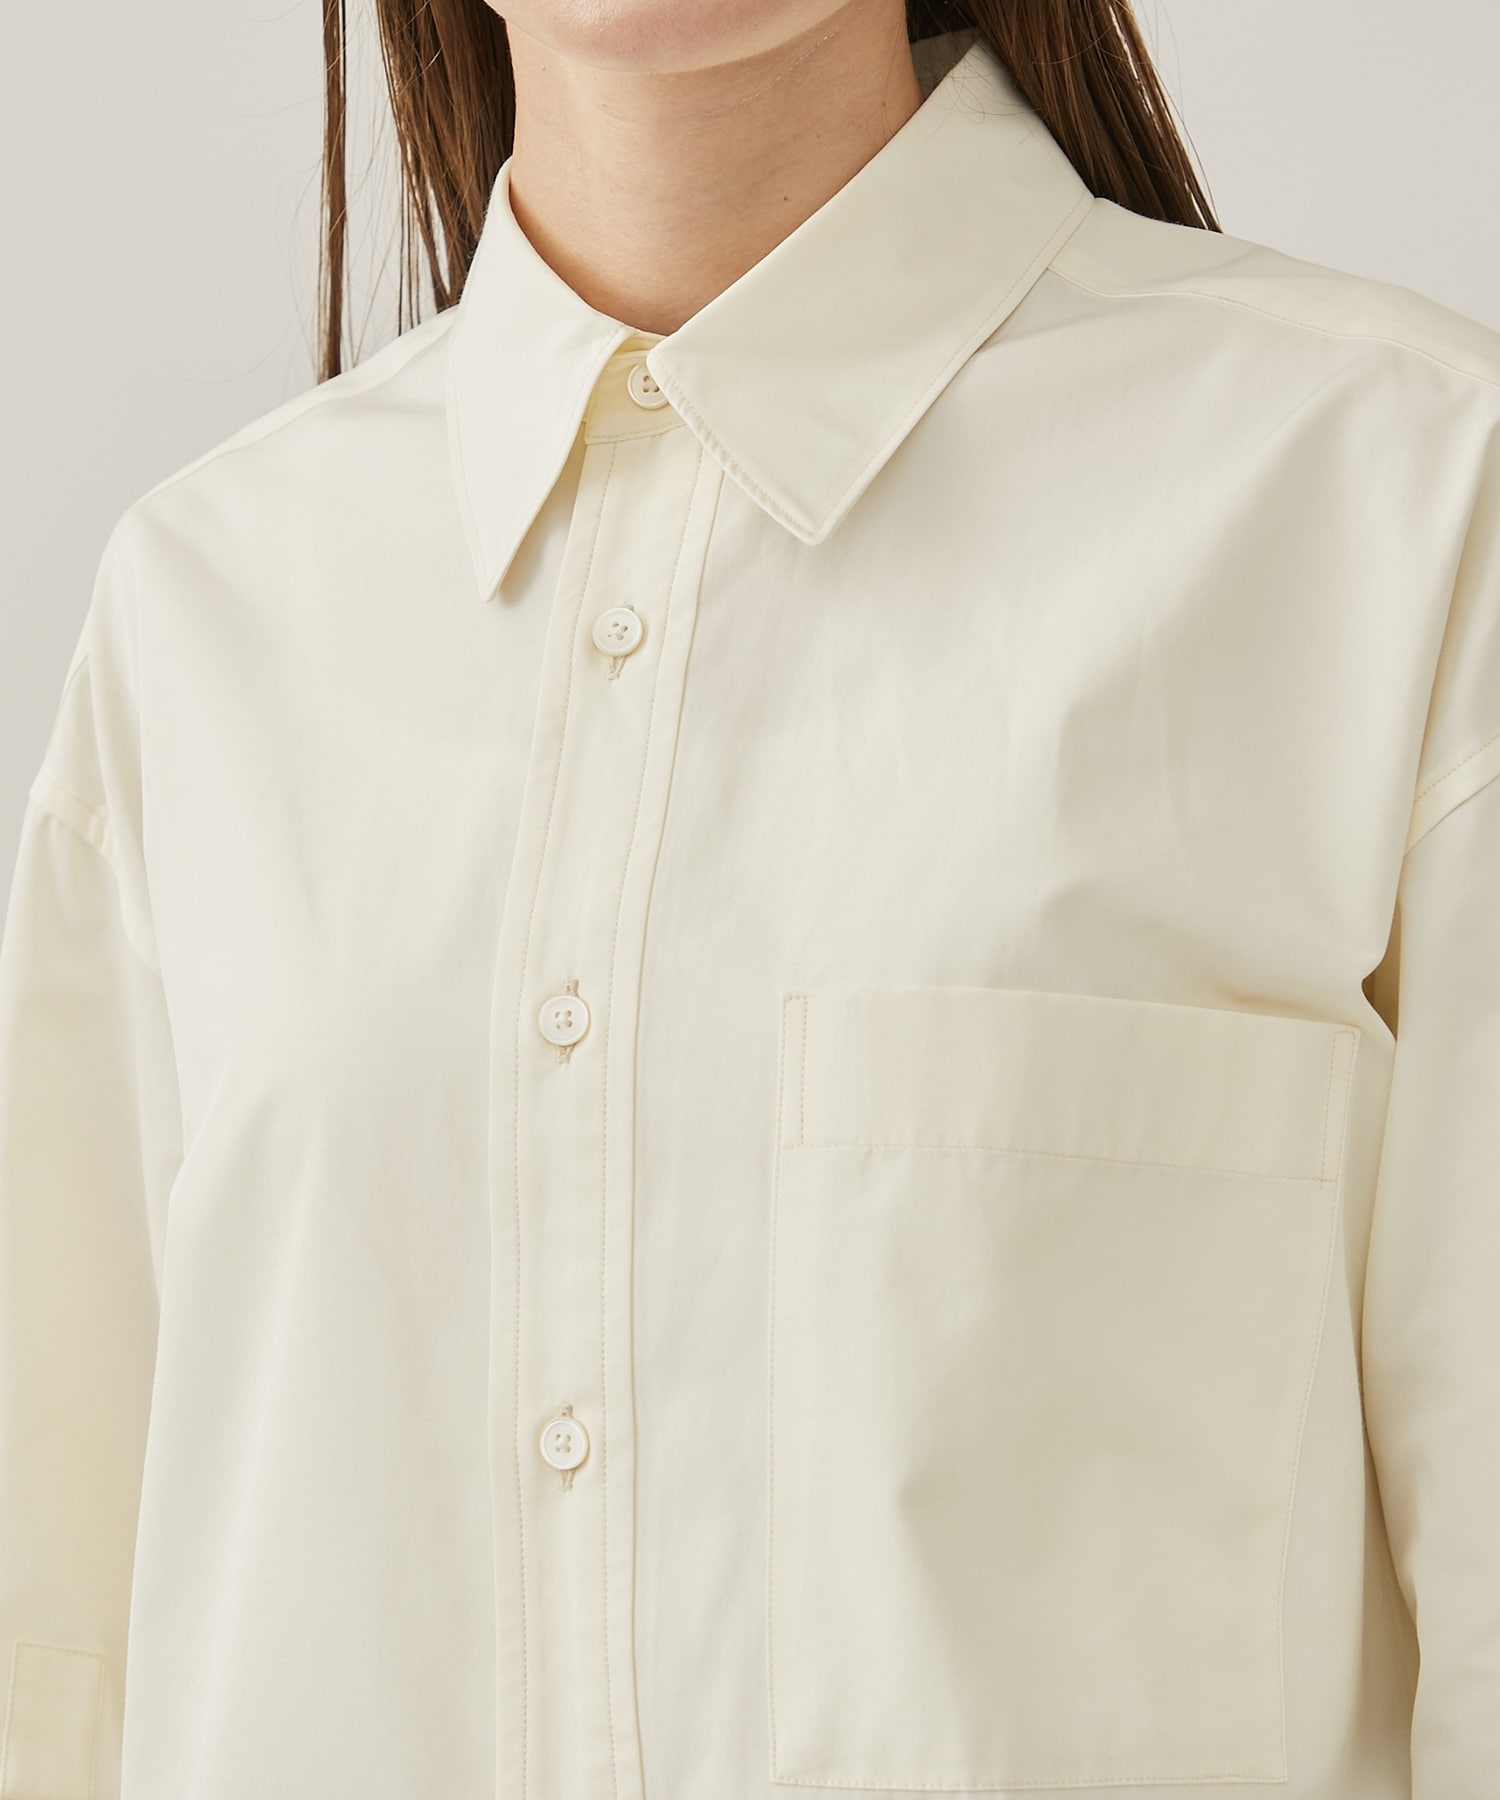 Cotton polyester taffeta over shirt 08sircus